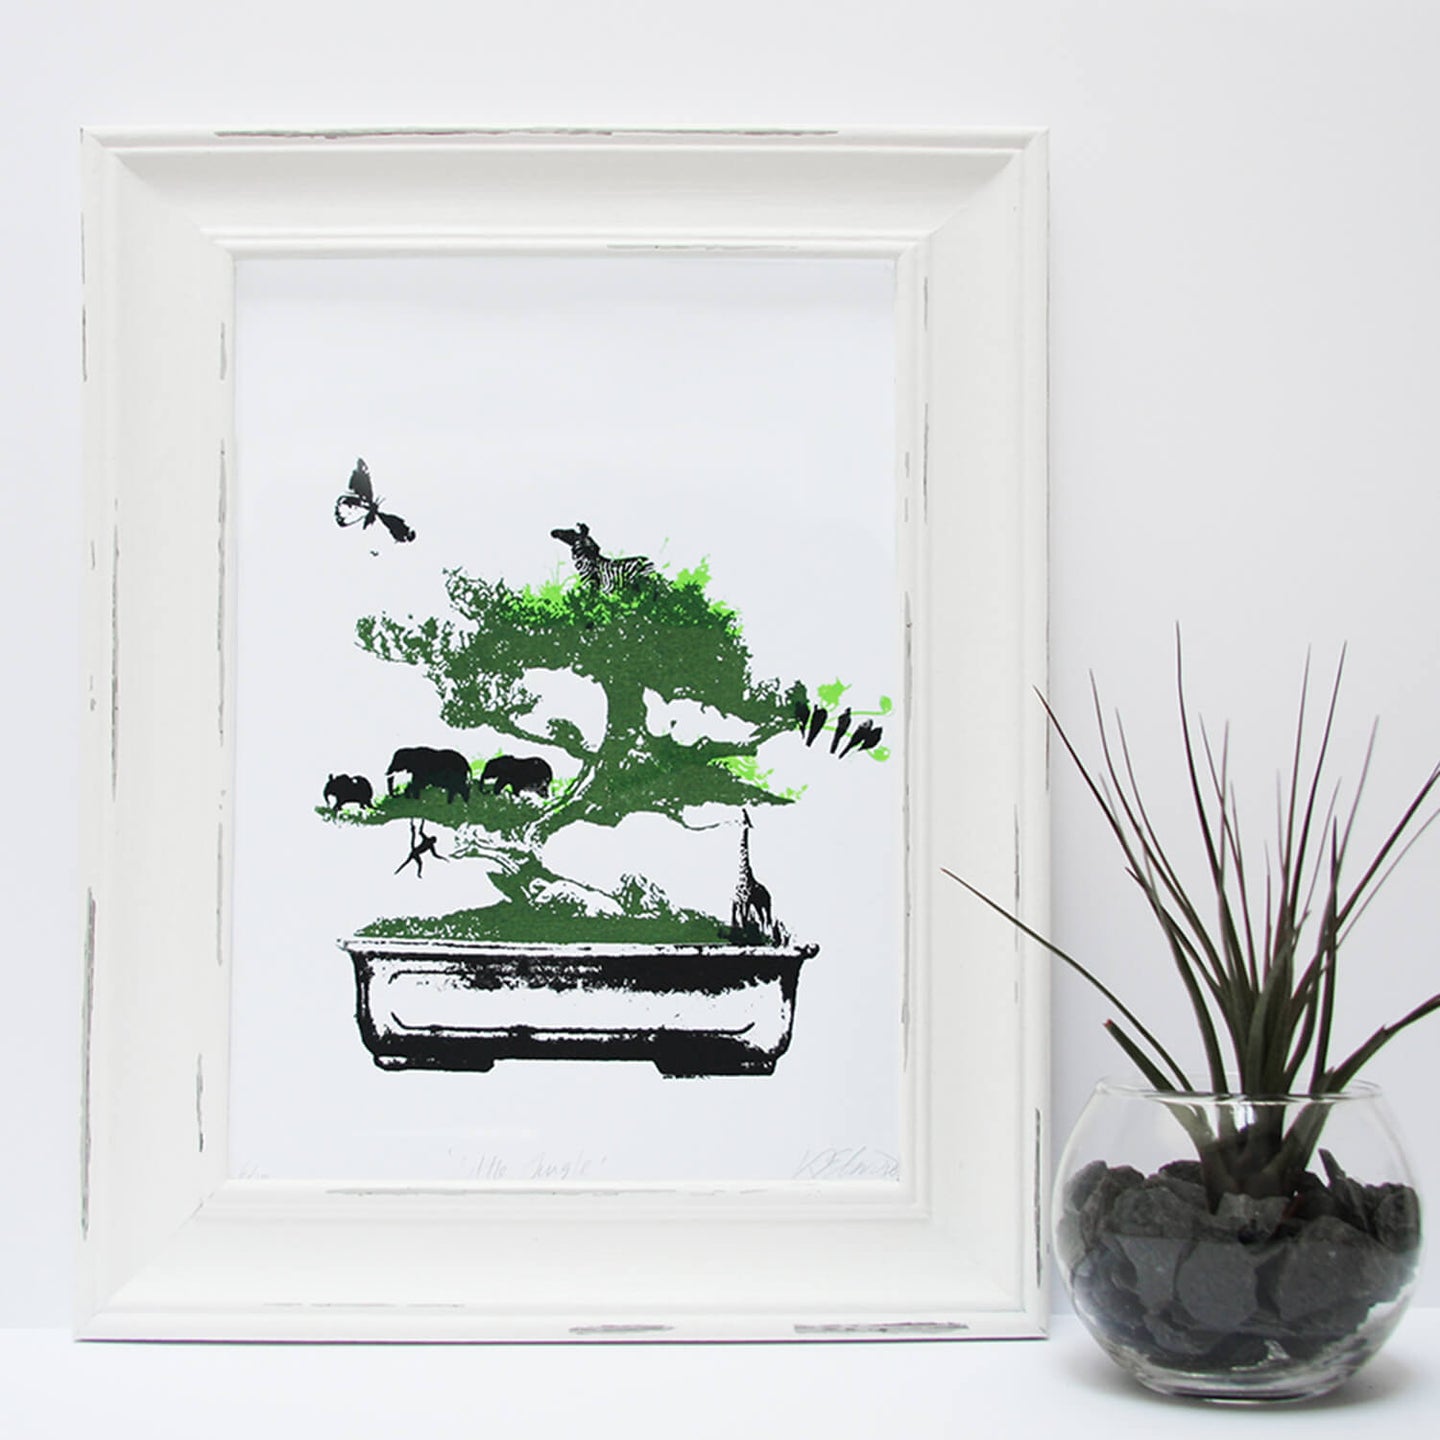 'Little Jungle' Original Handmade Silk Screen Print